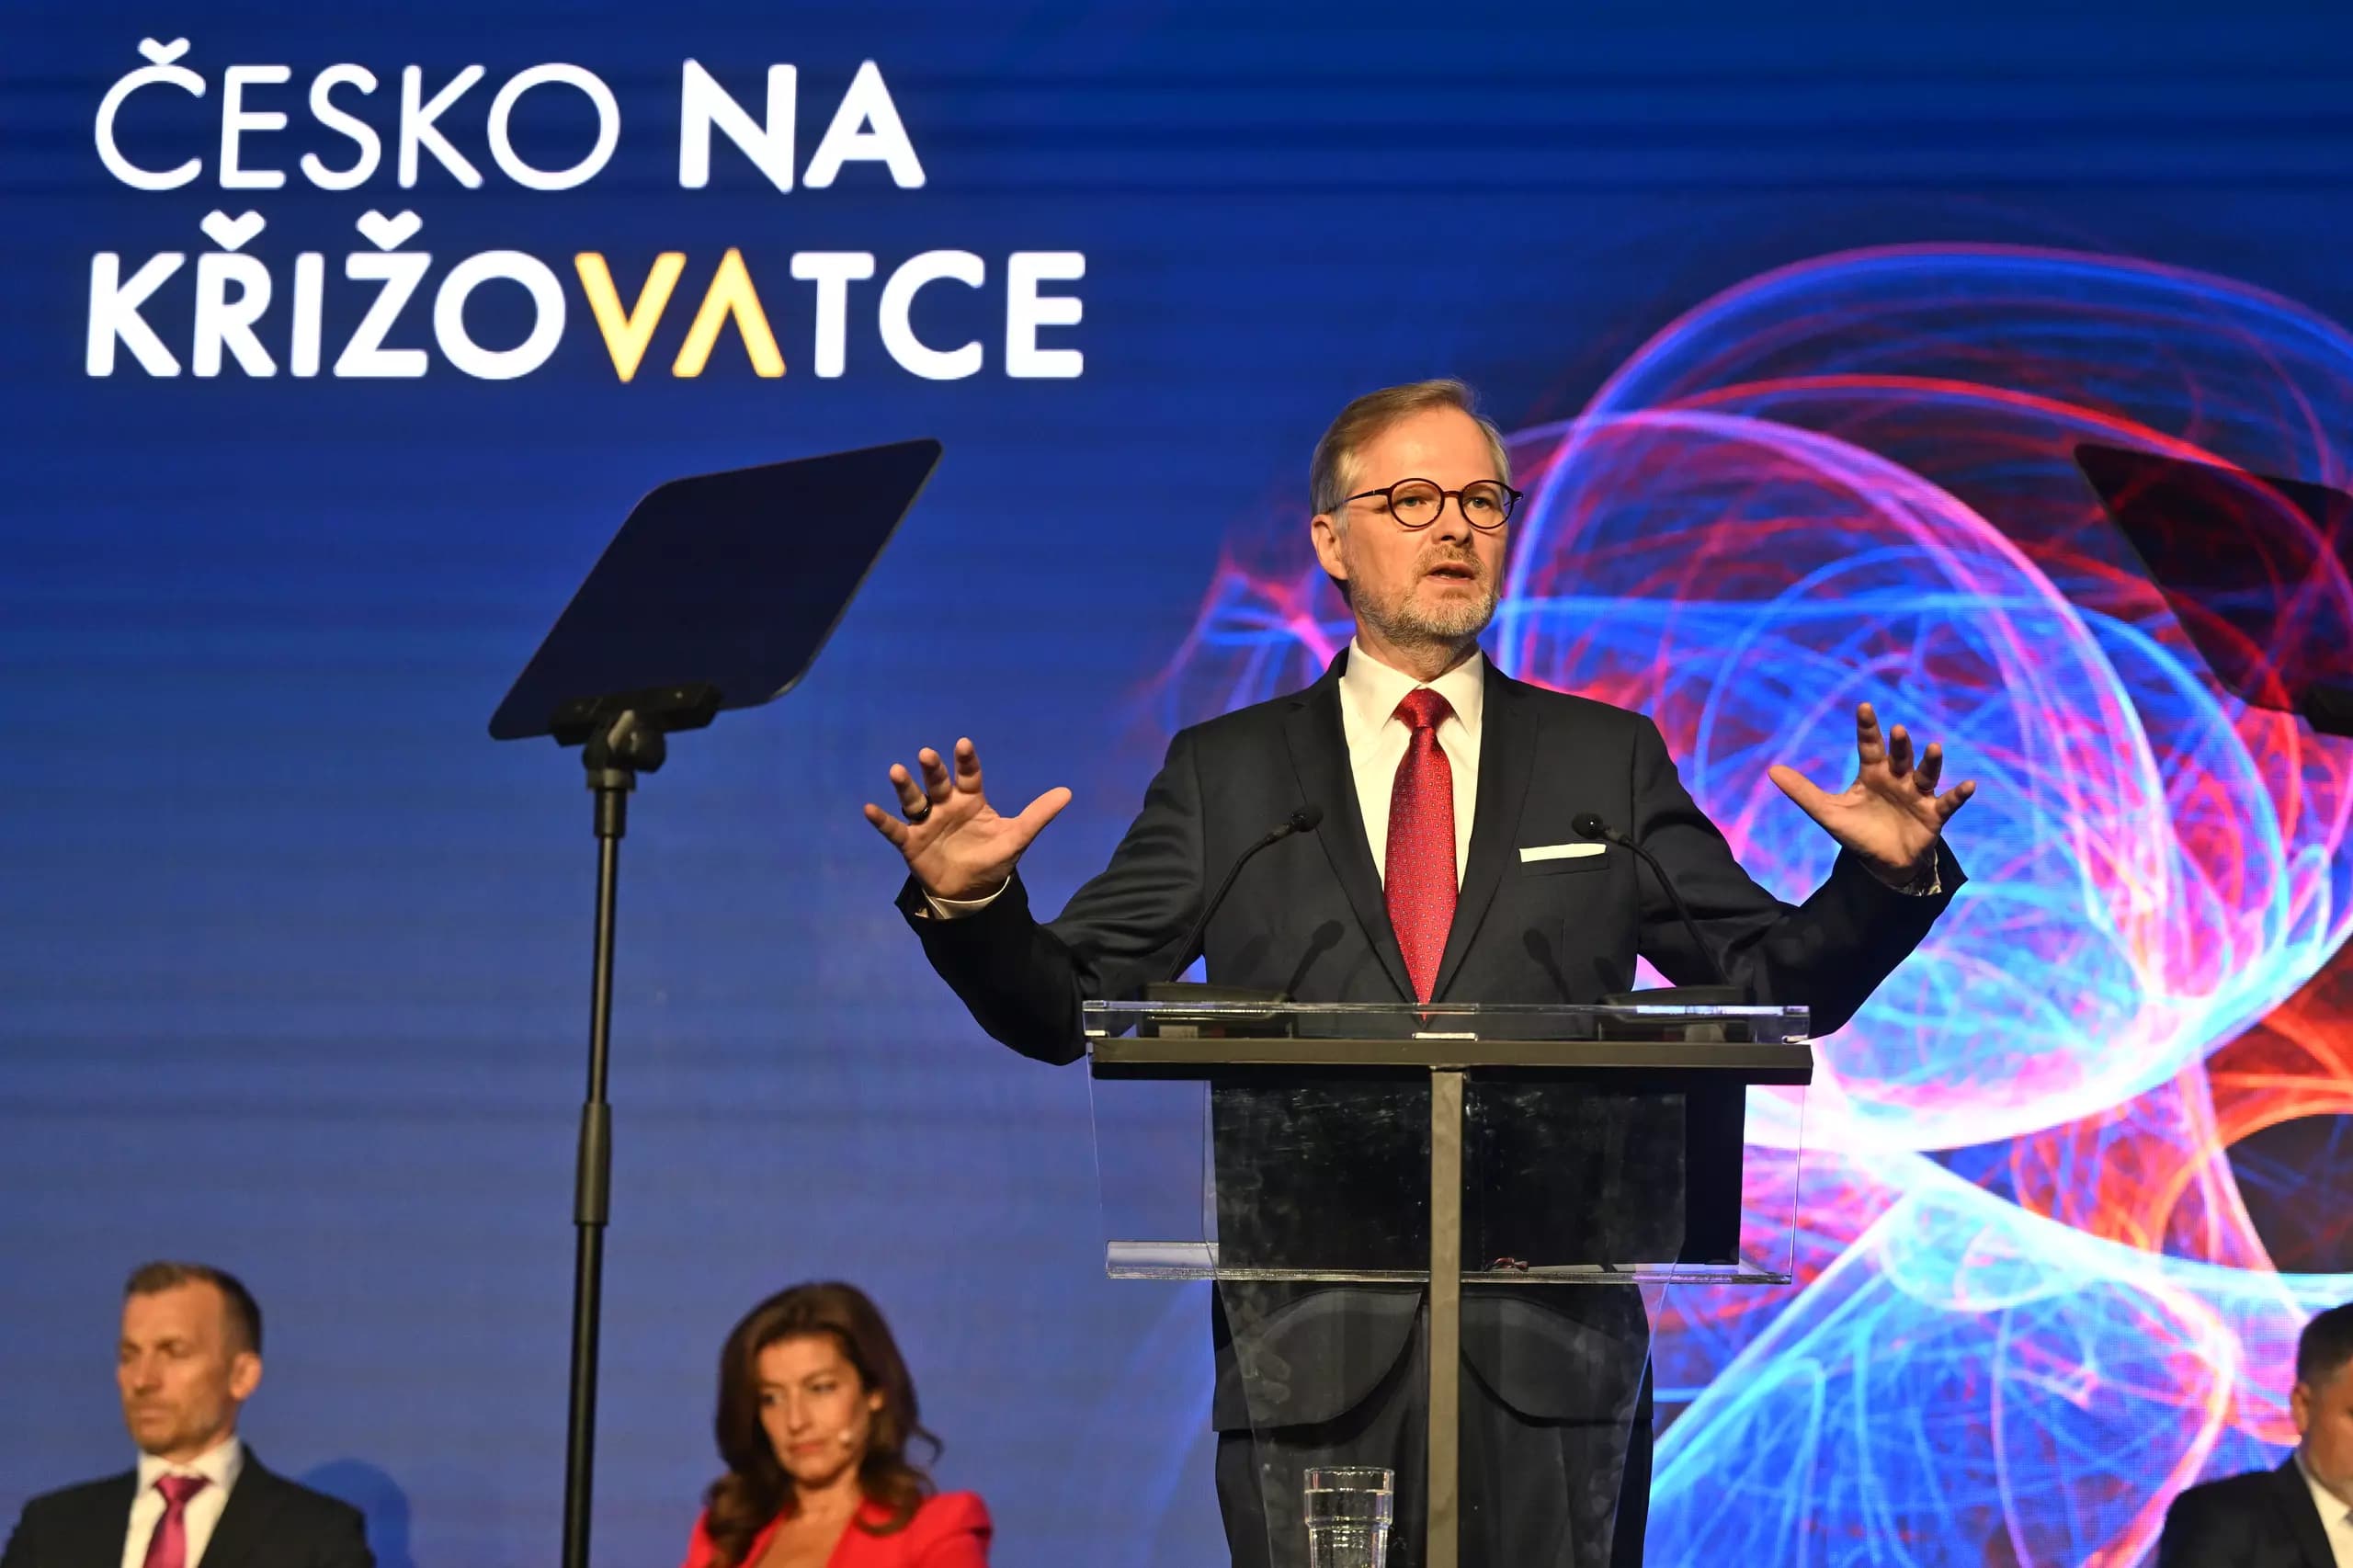 Что ждет Чехию в ближайшие 30 лет? По мнению премьер-министра страны, она должна стать перекрестком Европы